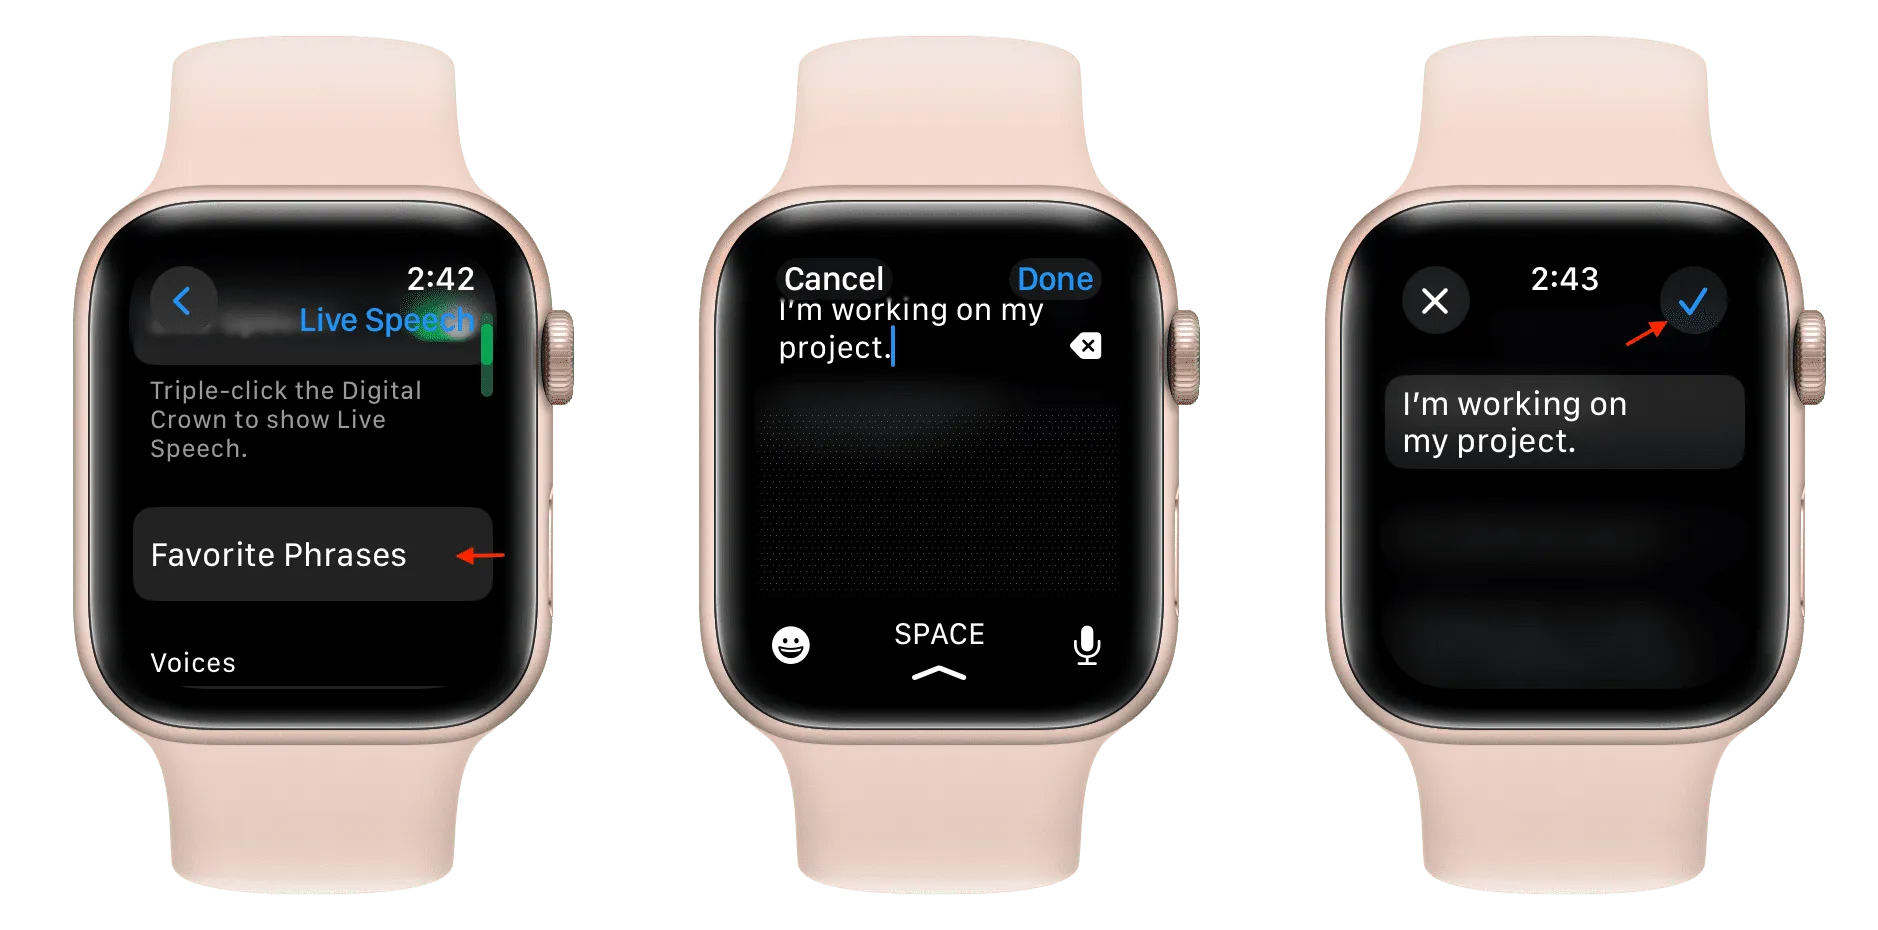 Adicione uma nova frase favorita ao Live Speech no Apple Watch